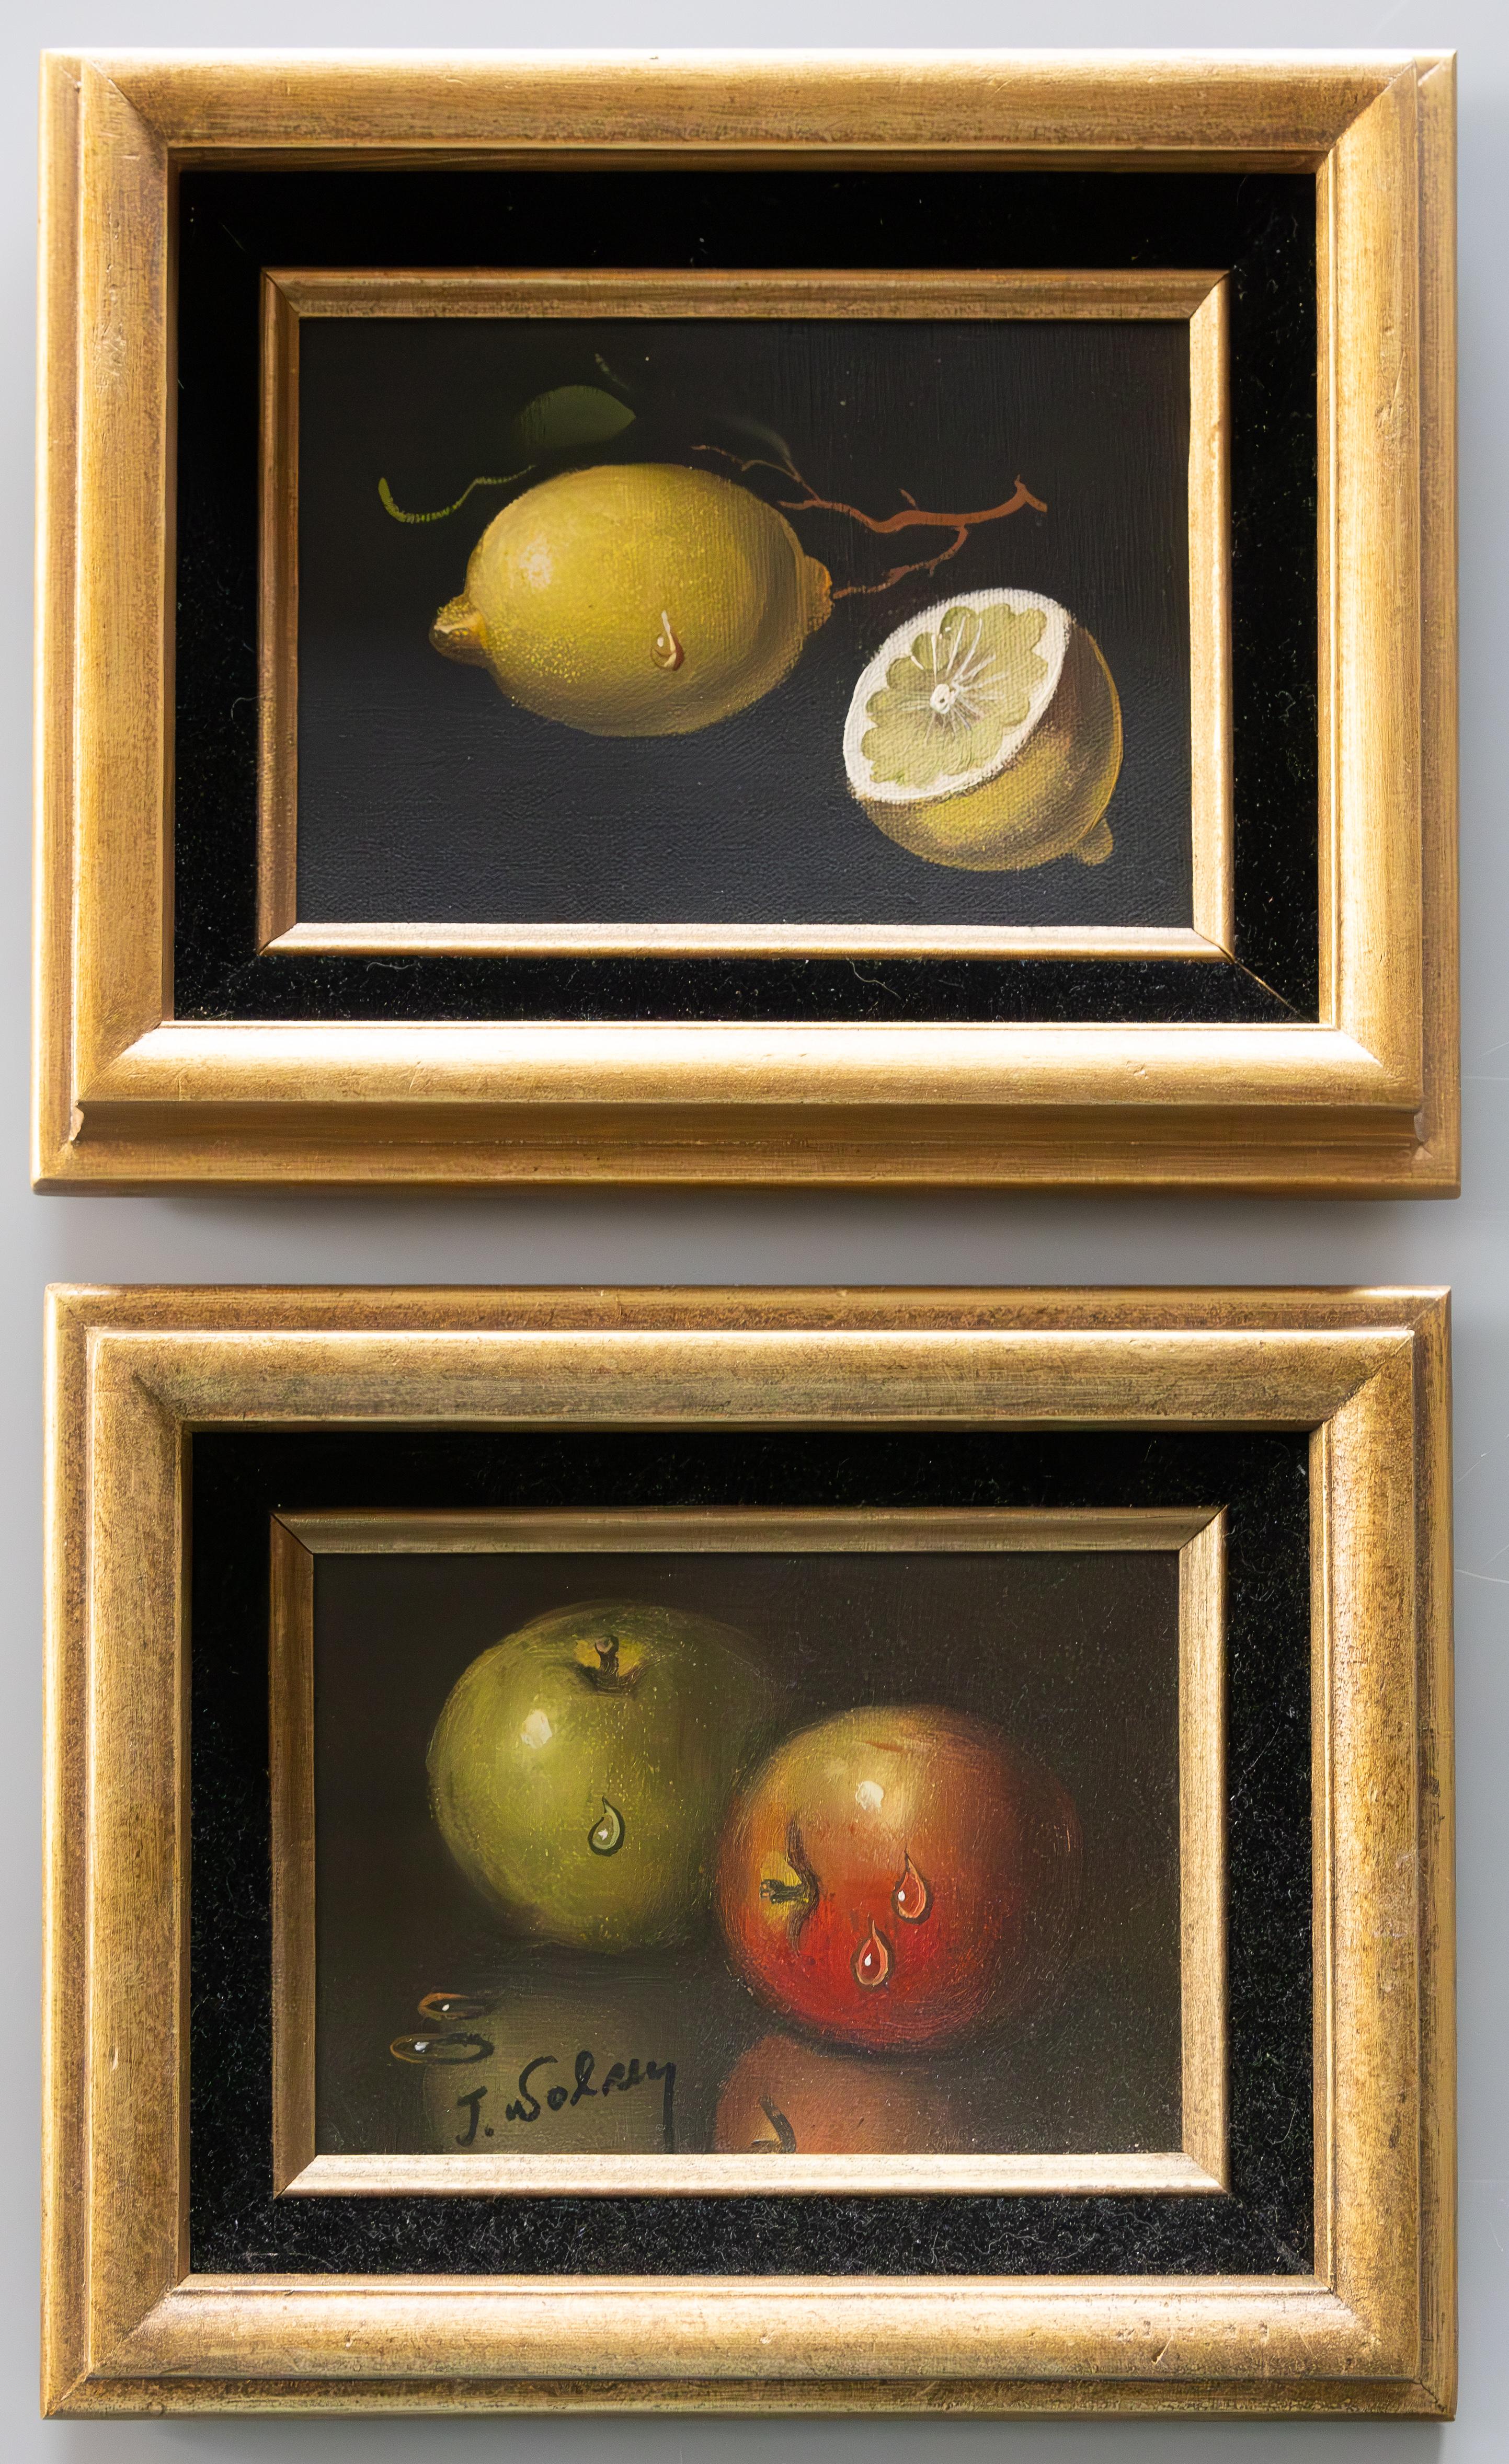 Jolie paire de tableaux représentant des citrons et des pommes scintillants. Huile sur toile avec dos en carton. Le tableau avec les pommes est signé, signature indistincte.  Les cadres sont incrustés de velours noir et légèrement guildés. La